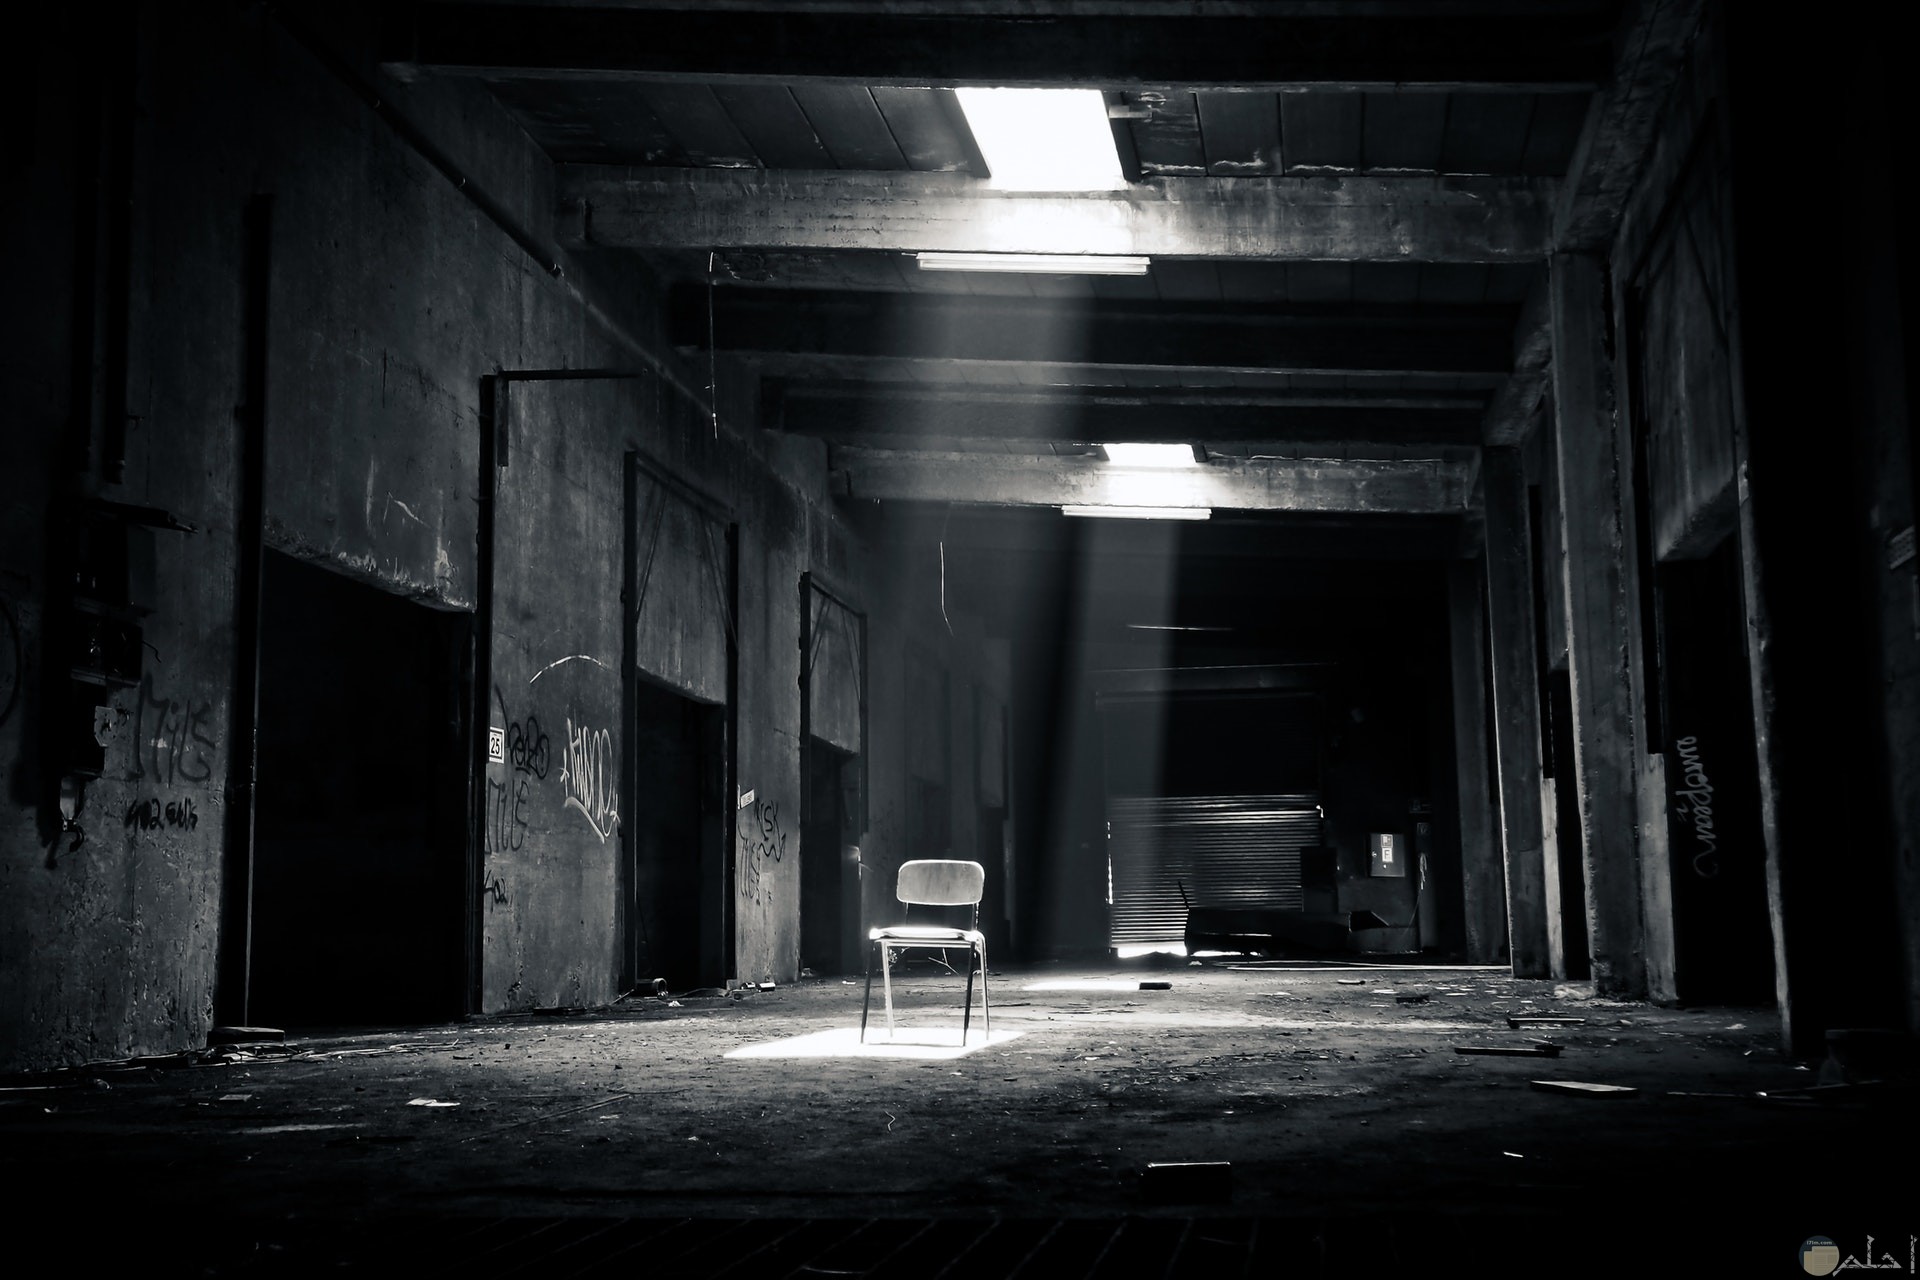 صورة مخيفة بالأبيض والاسود لمكان مهجور ويوجد كرسي يصل له النور